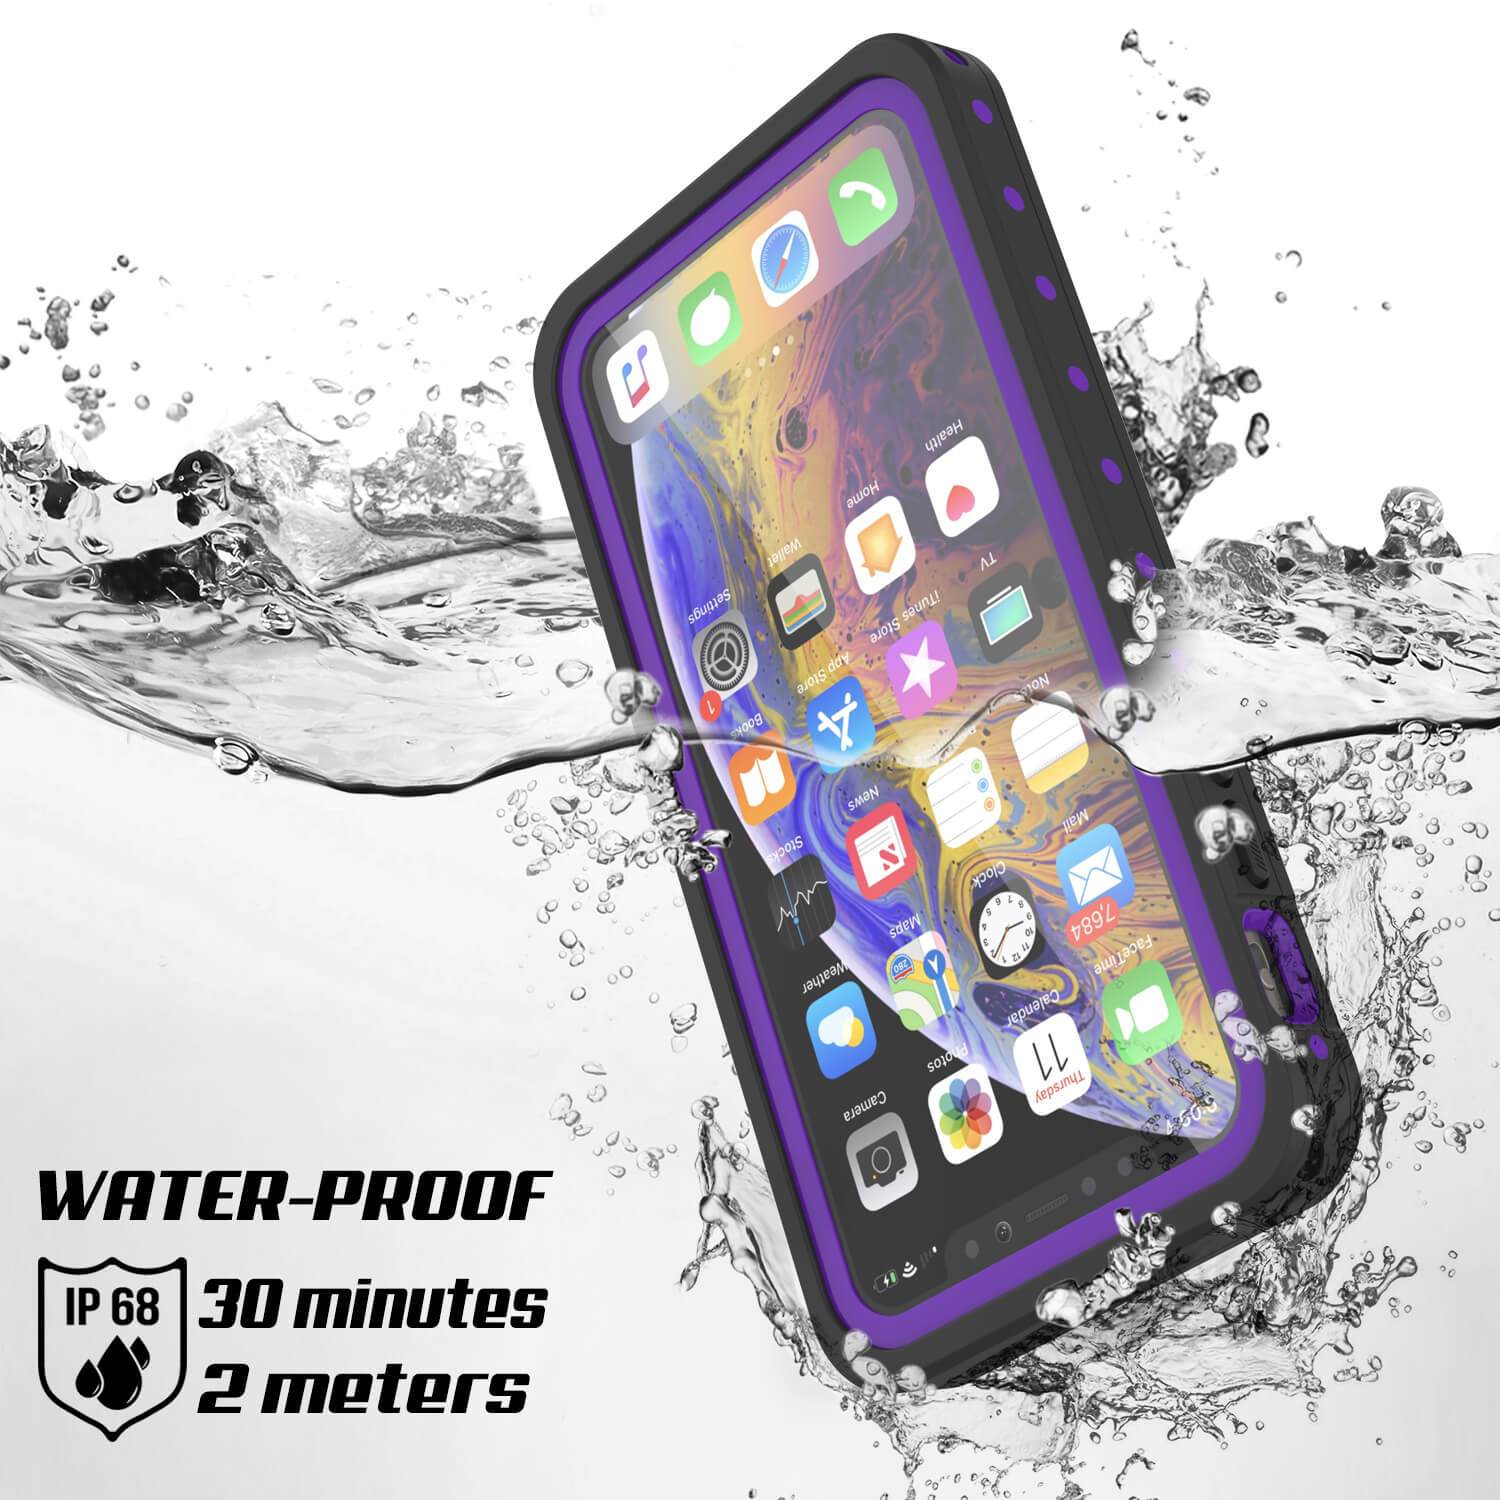 iPhone 11 Pro Max Waterproof IP68 Case, Punkcase [Purple] [StudStar Series] [Slim Fit] [Dirtproof]